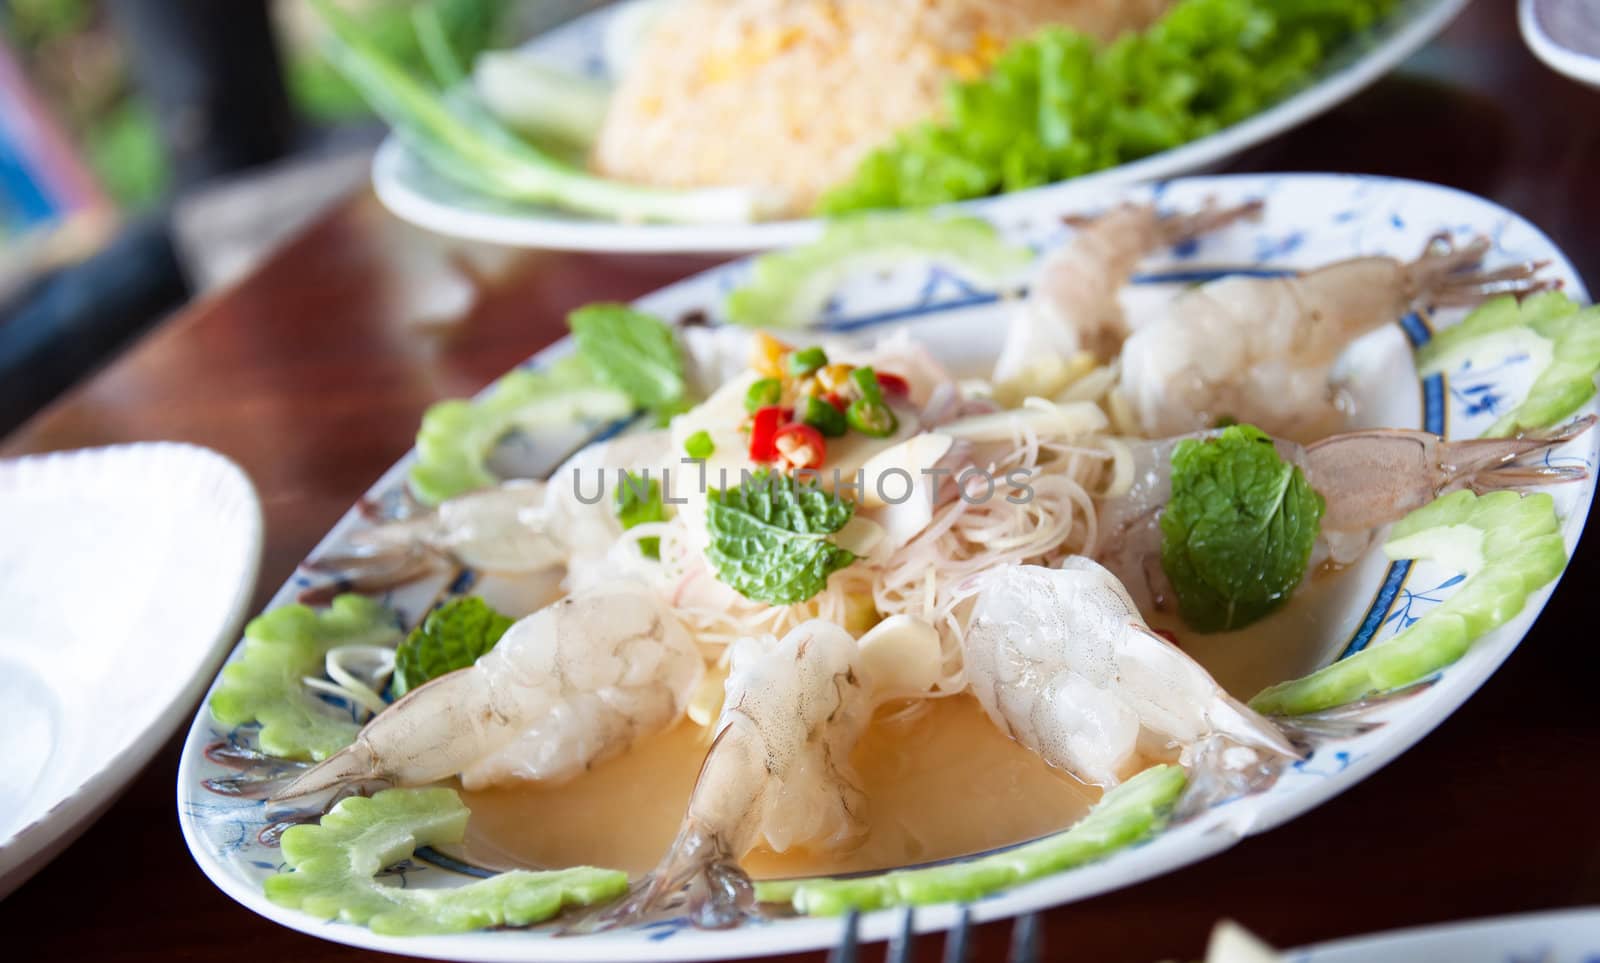 Thai spicy shrimp in Salty sauce. by rainyrf